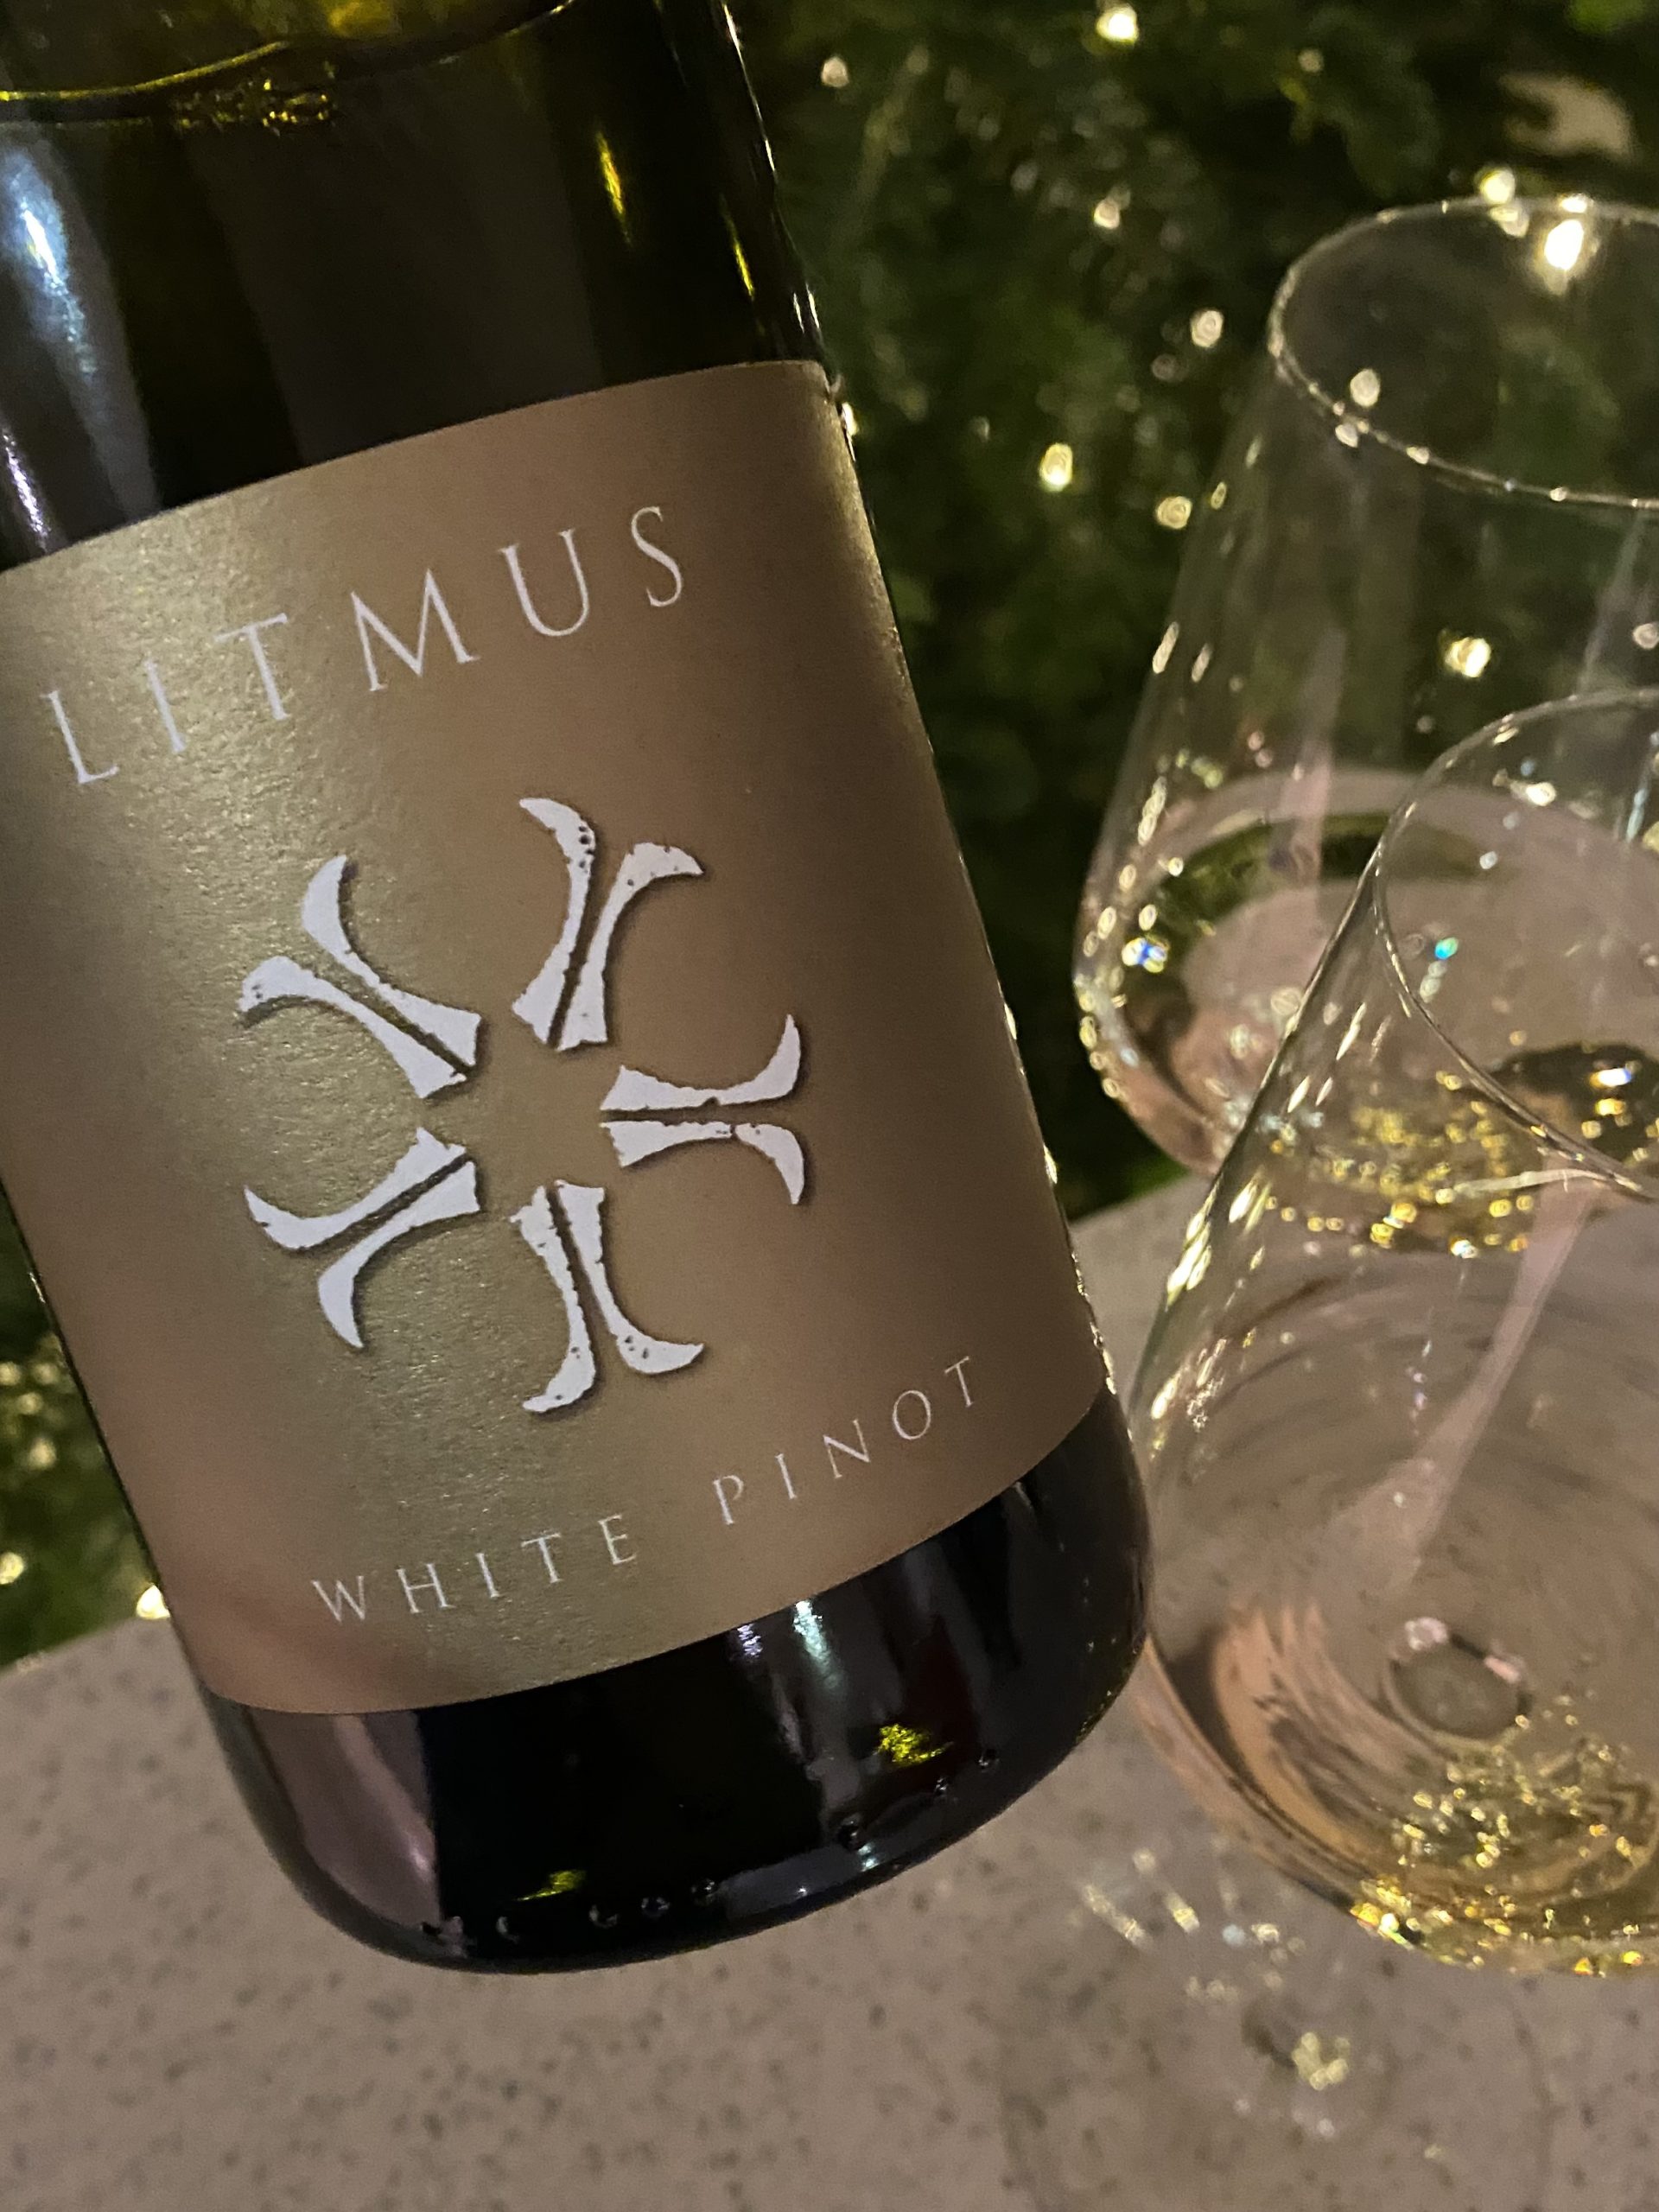 Litmus White Pinot